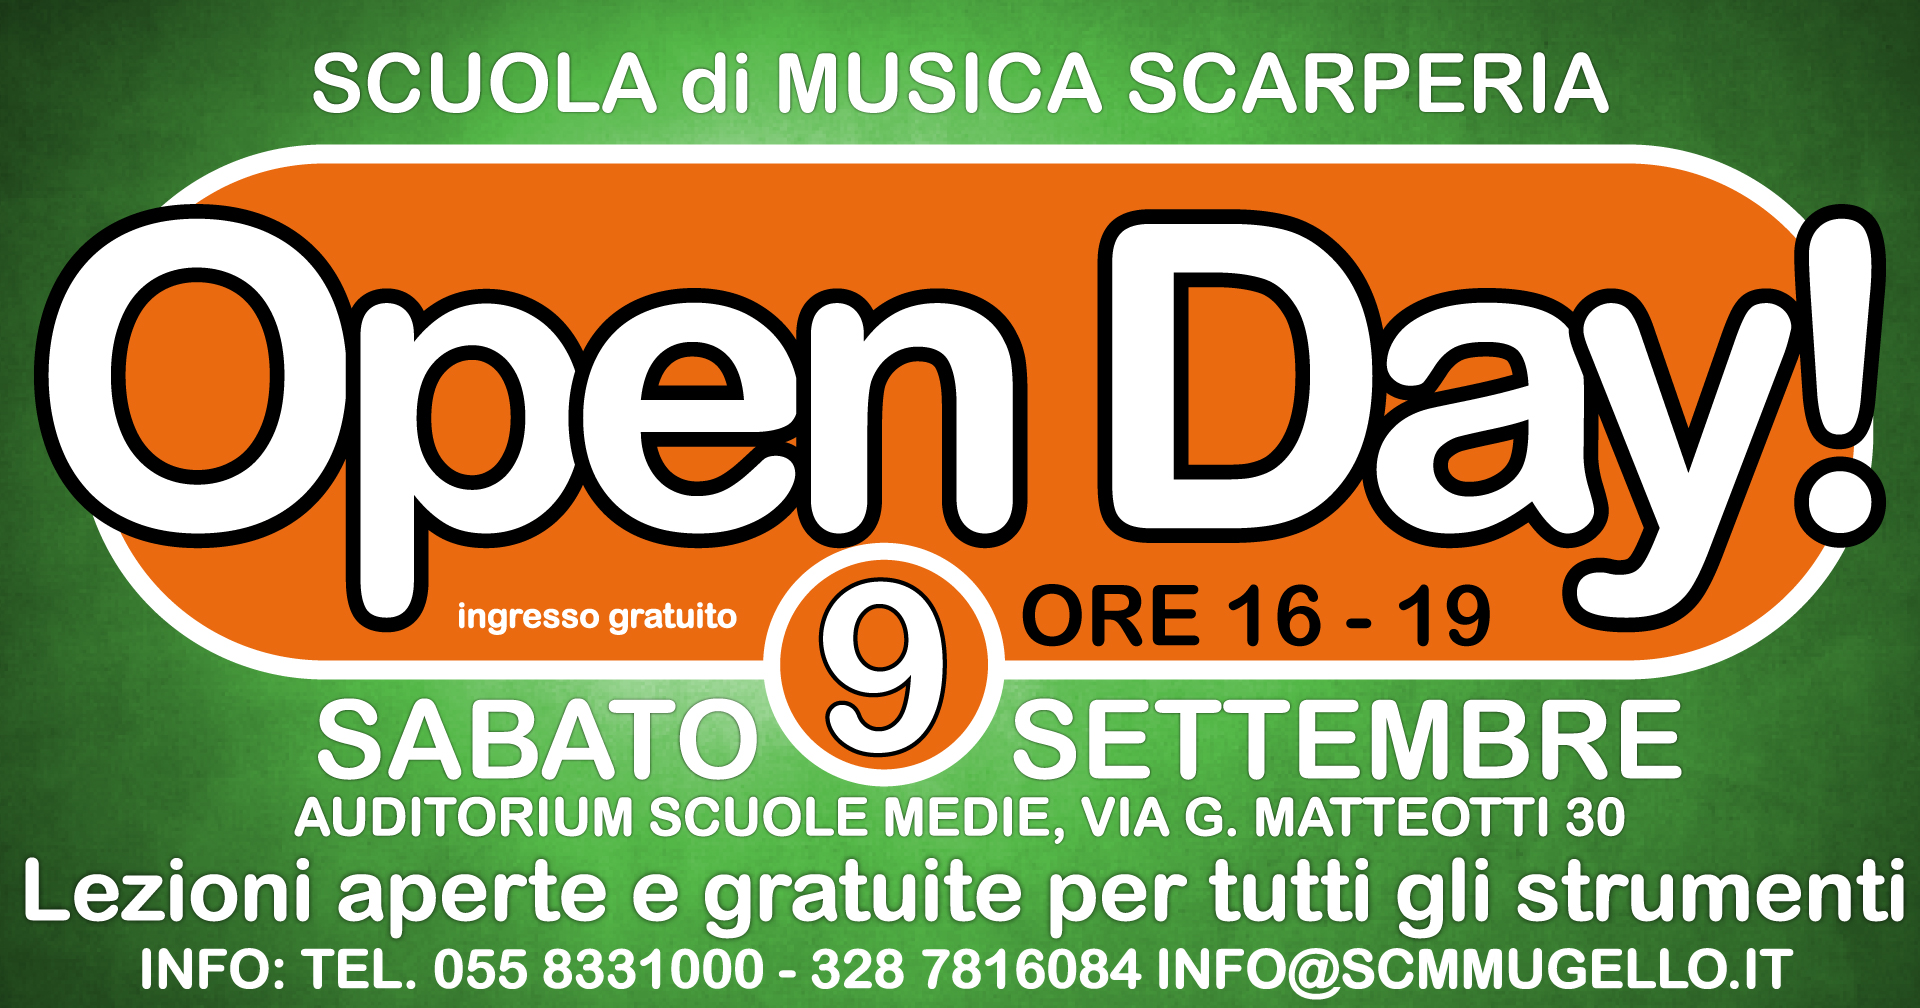 Open Day Scarperia Sabato 9 Settembre 2017 16-19